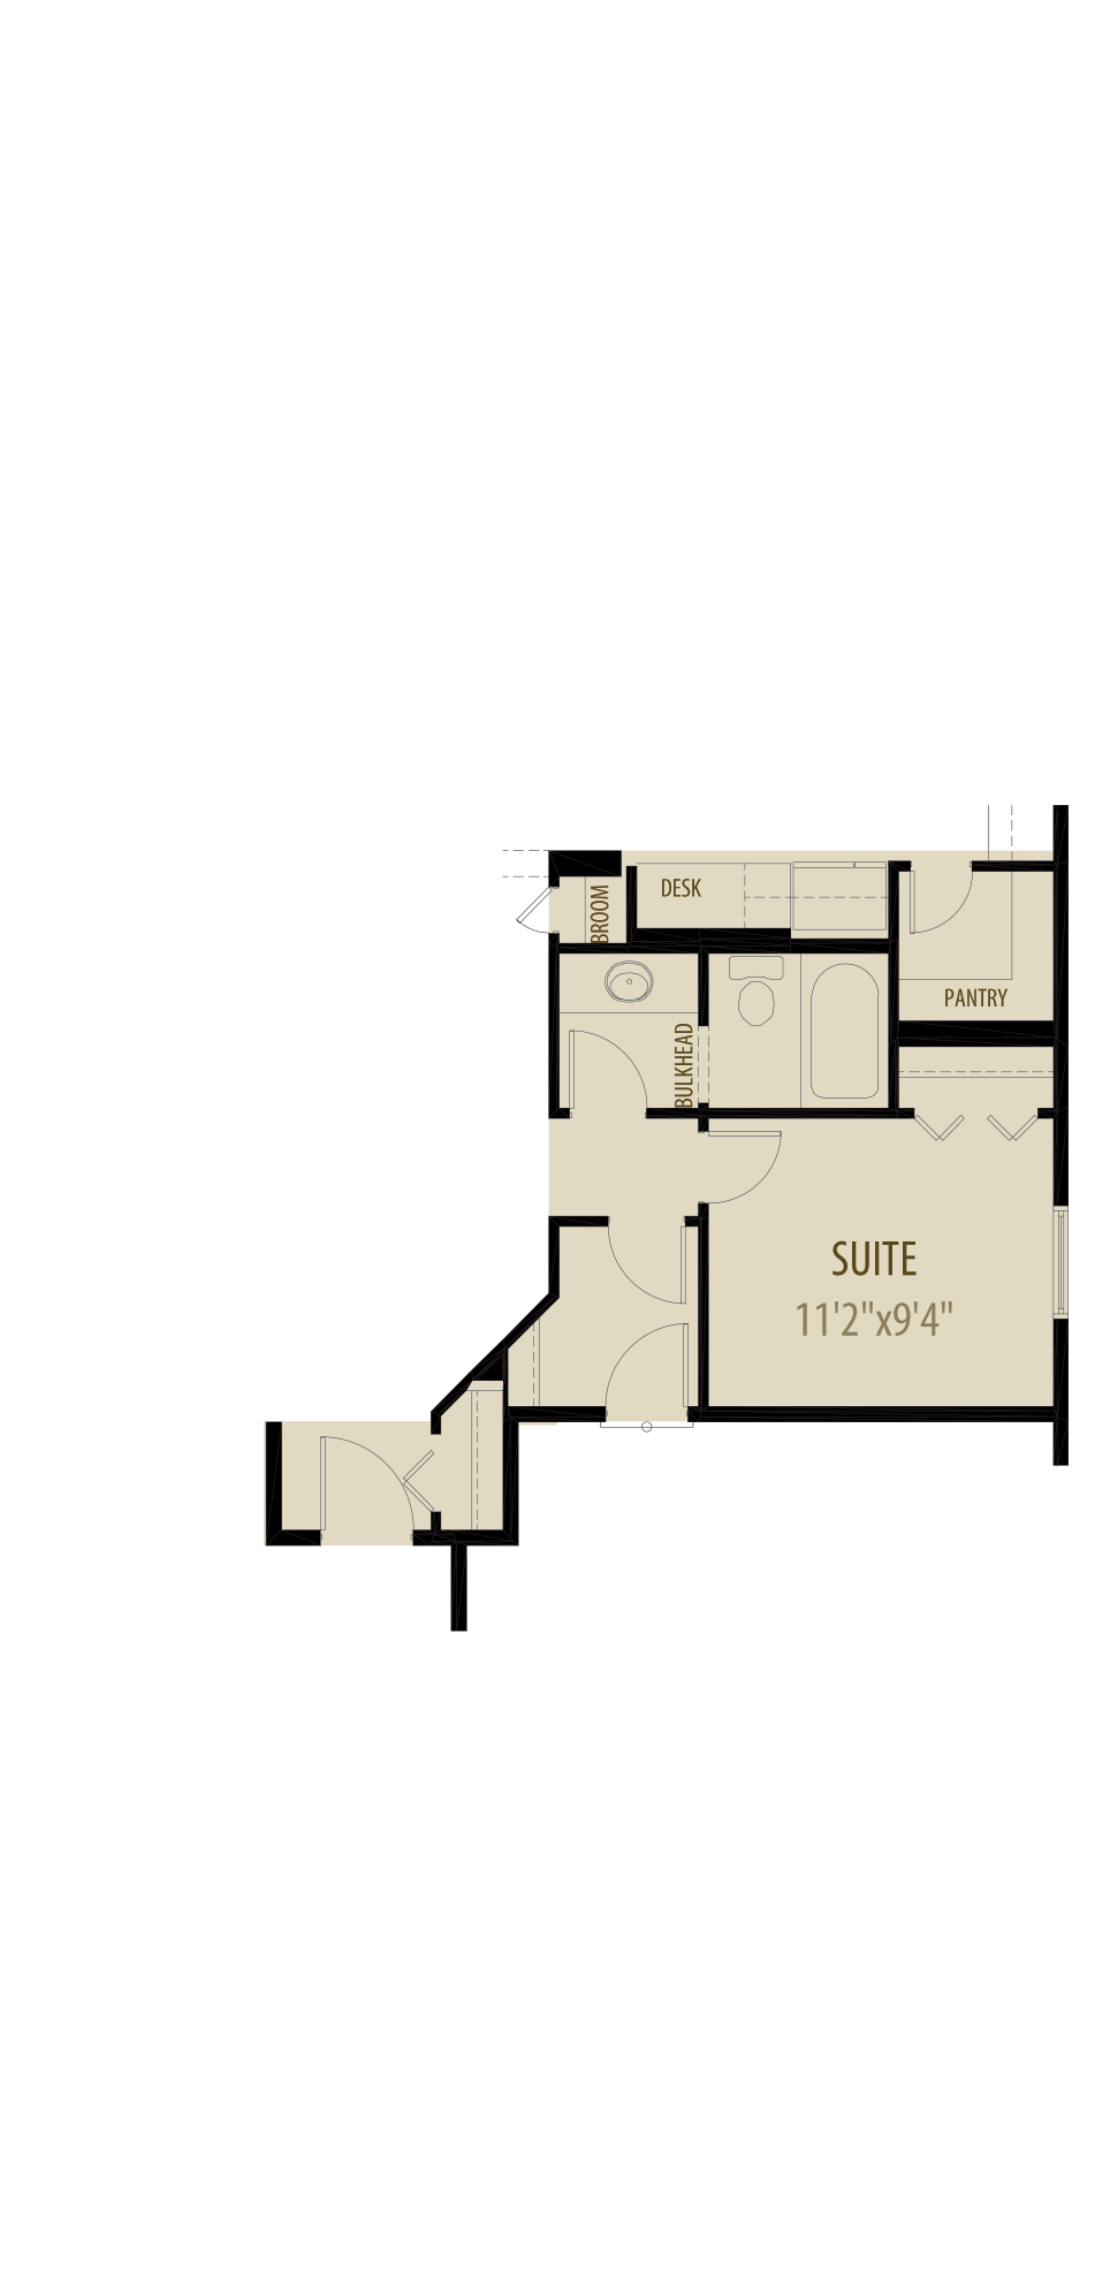 Option 3 Main Floor Suite Adds 165Sq Ft